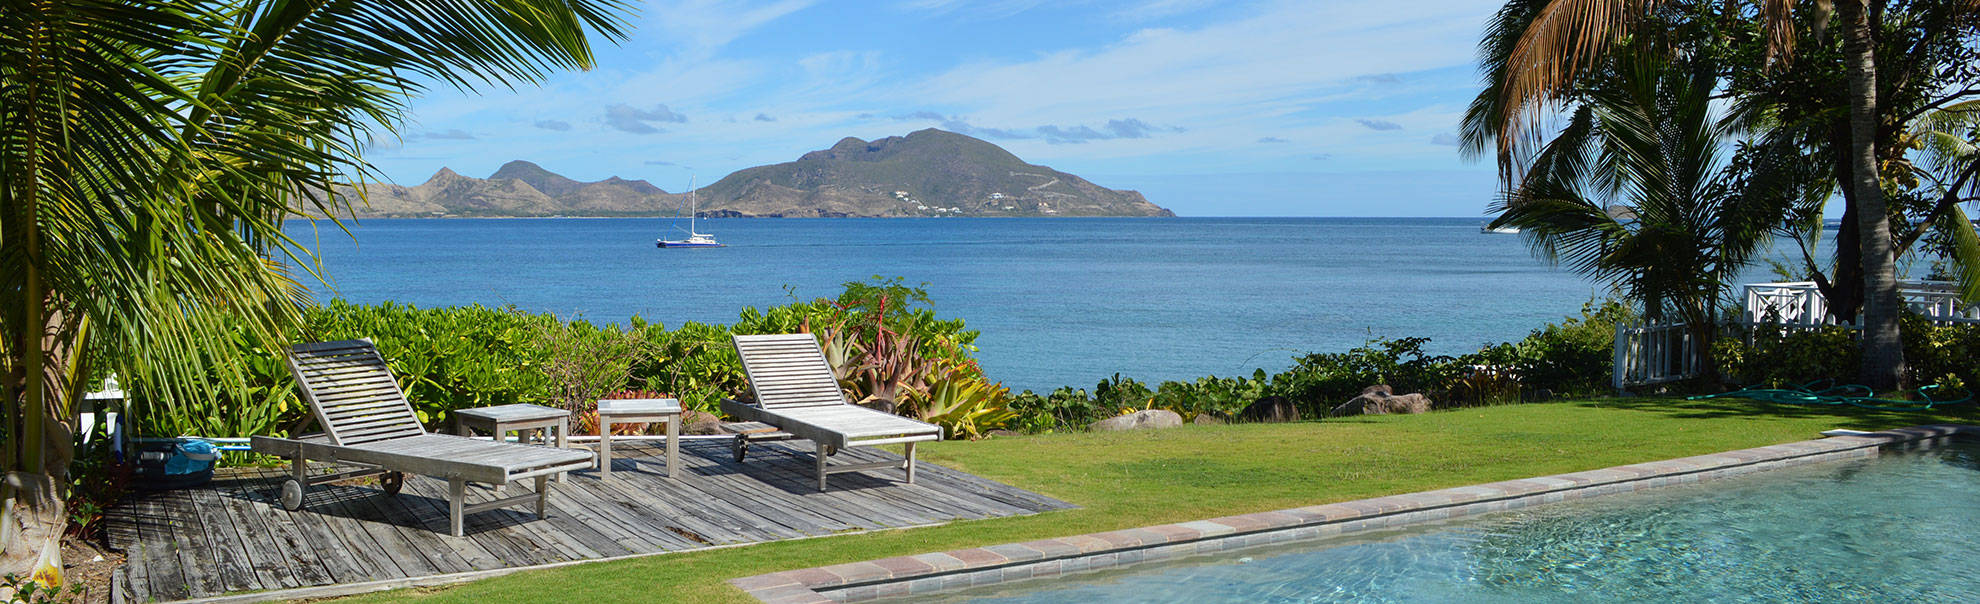 St Kitts og Nevis Pool Resort Wallpaper